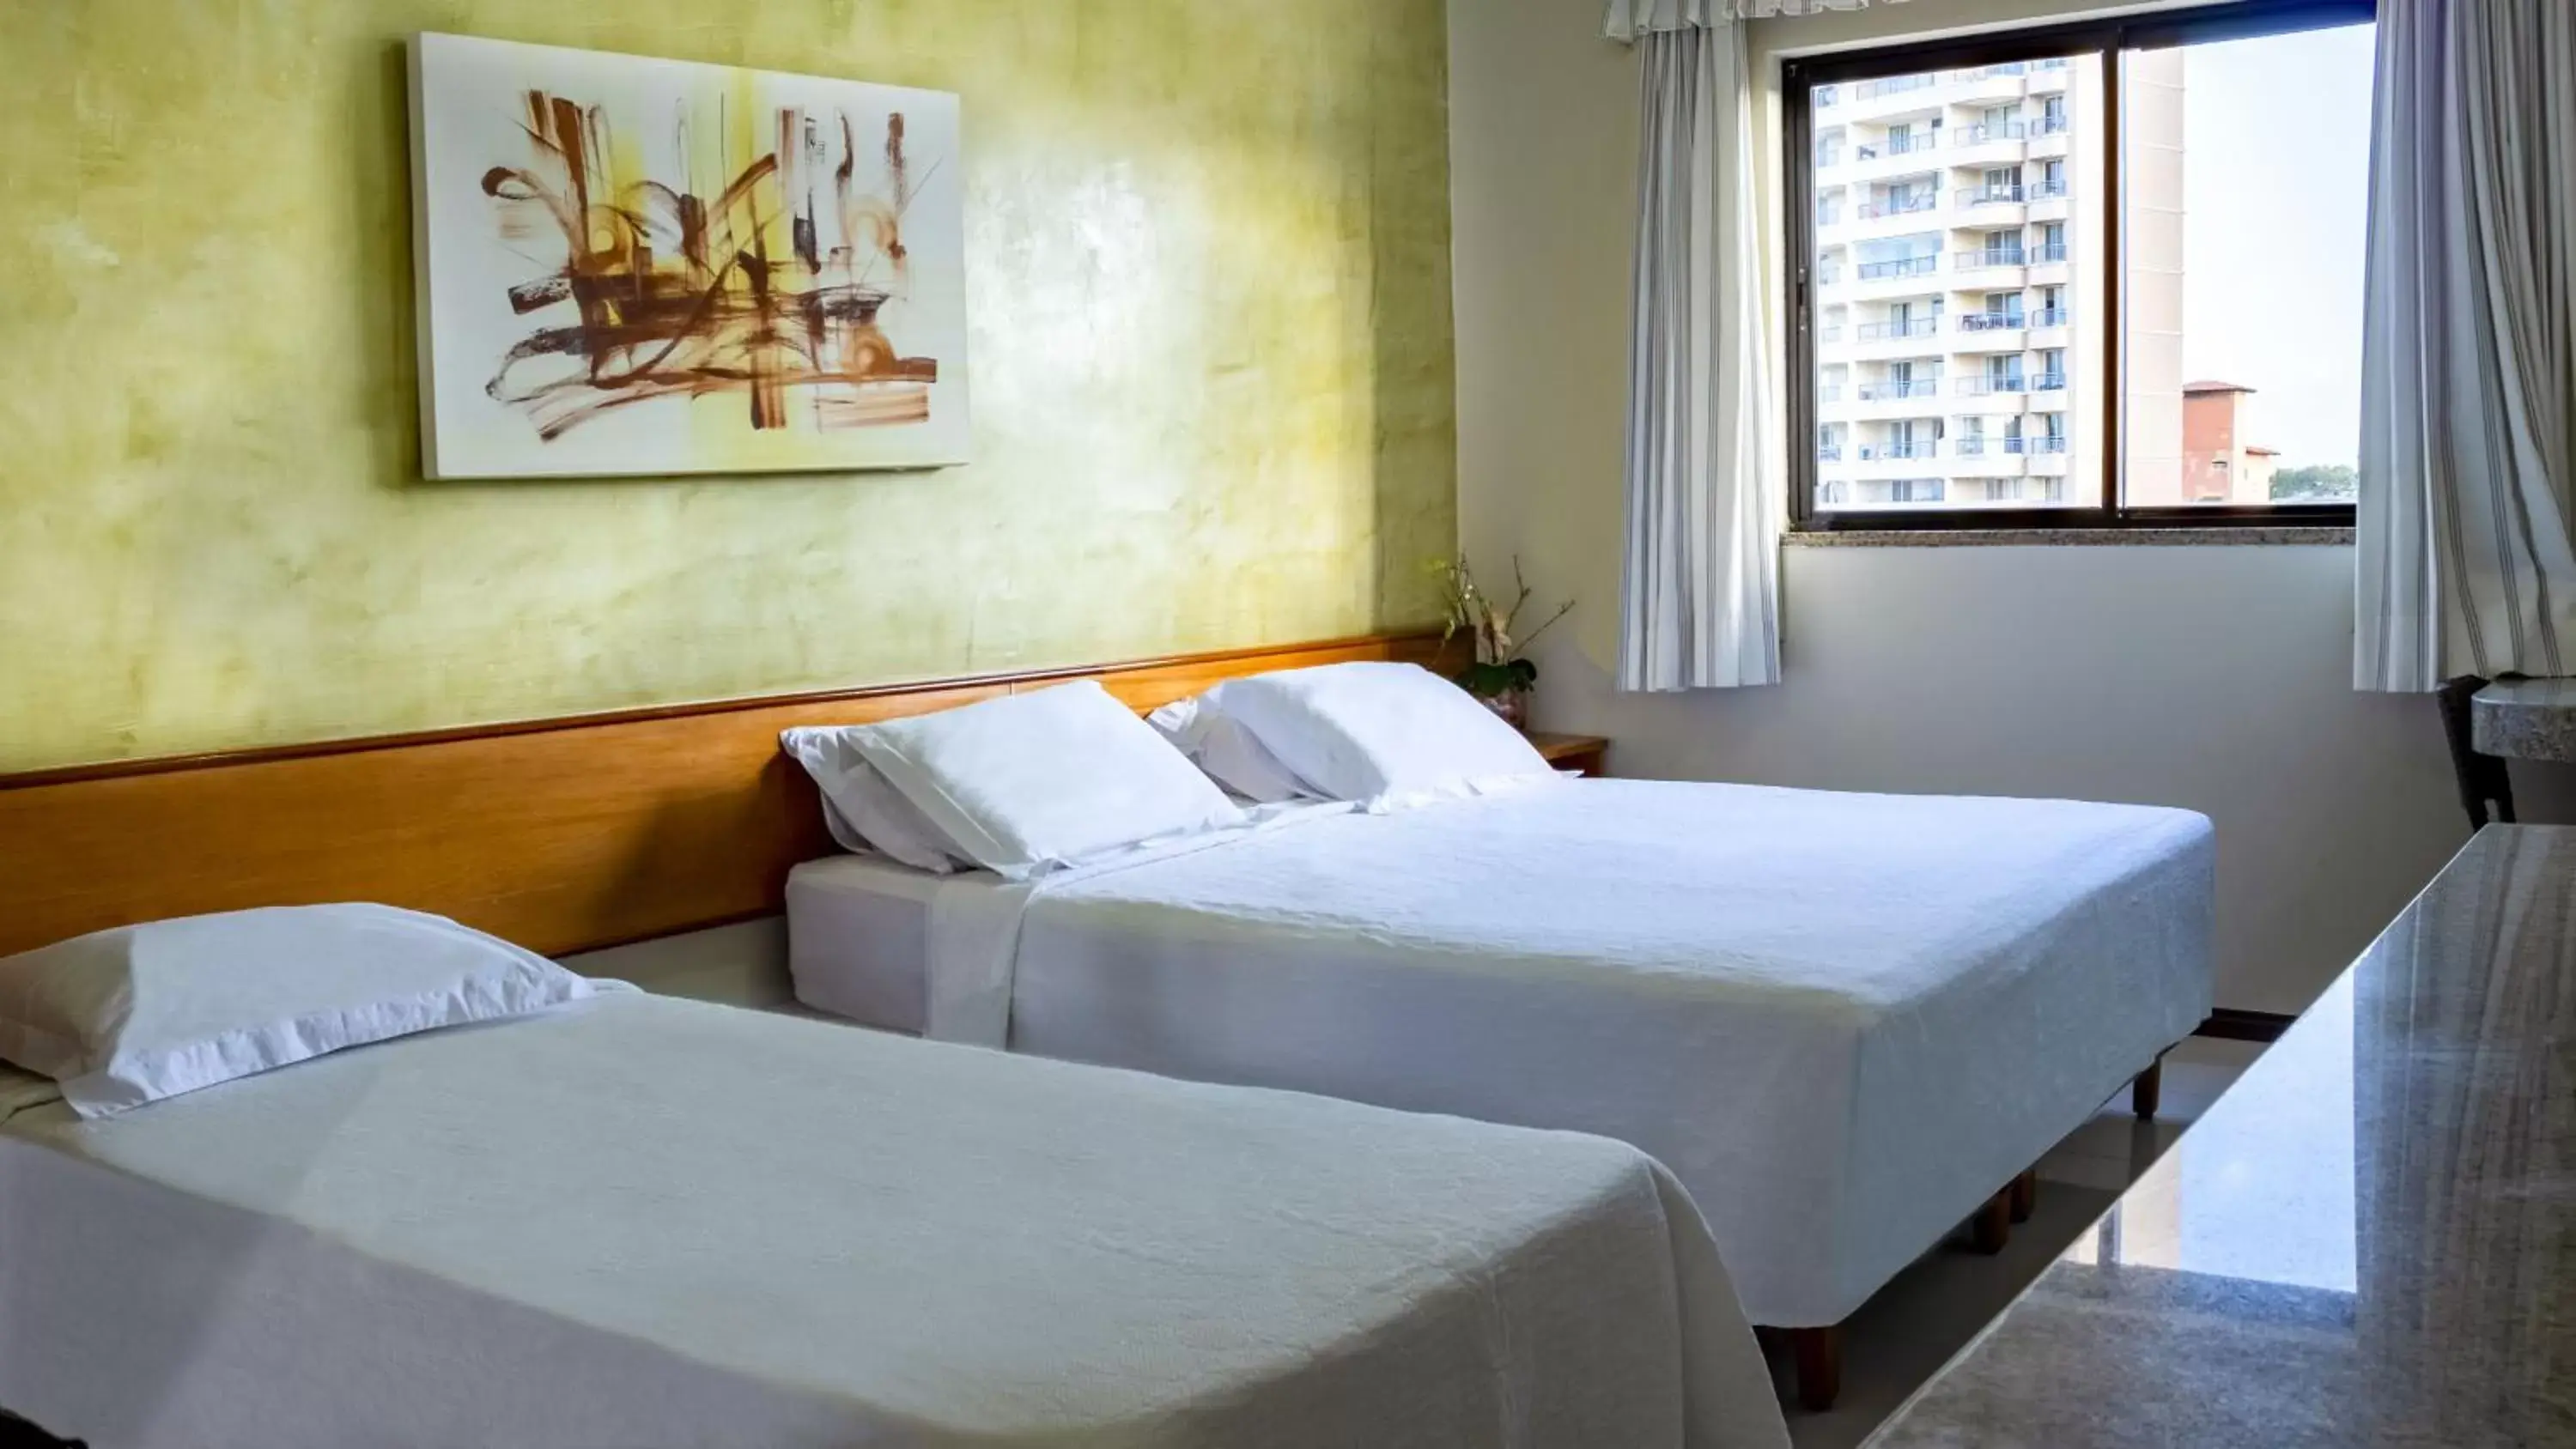 Bedroom, Bed in Golden Beach Hotel